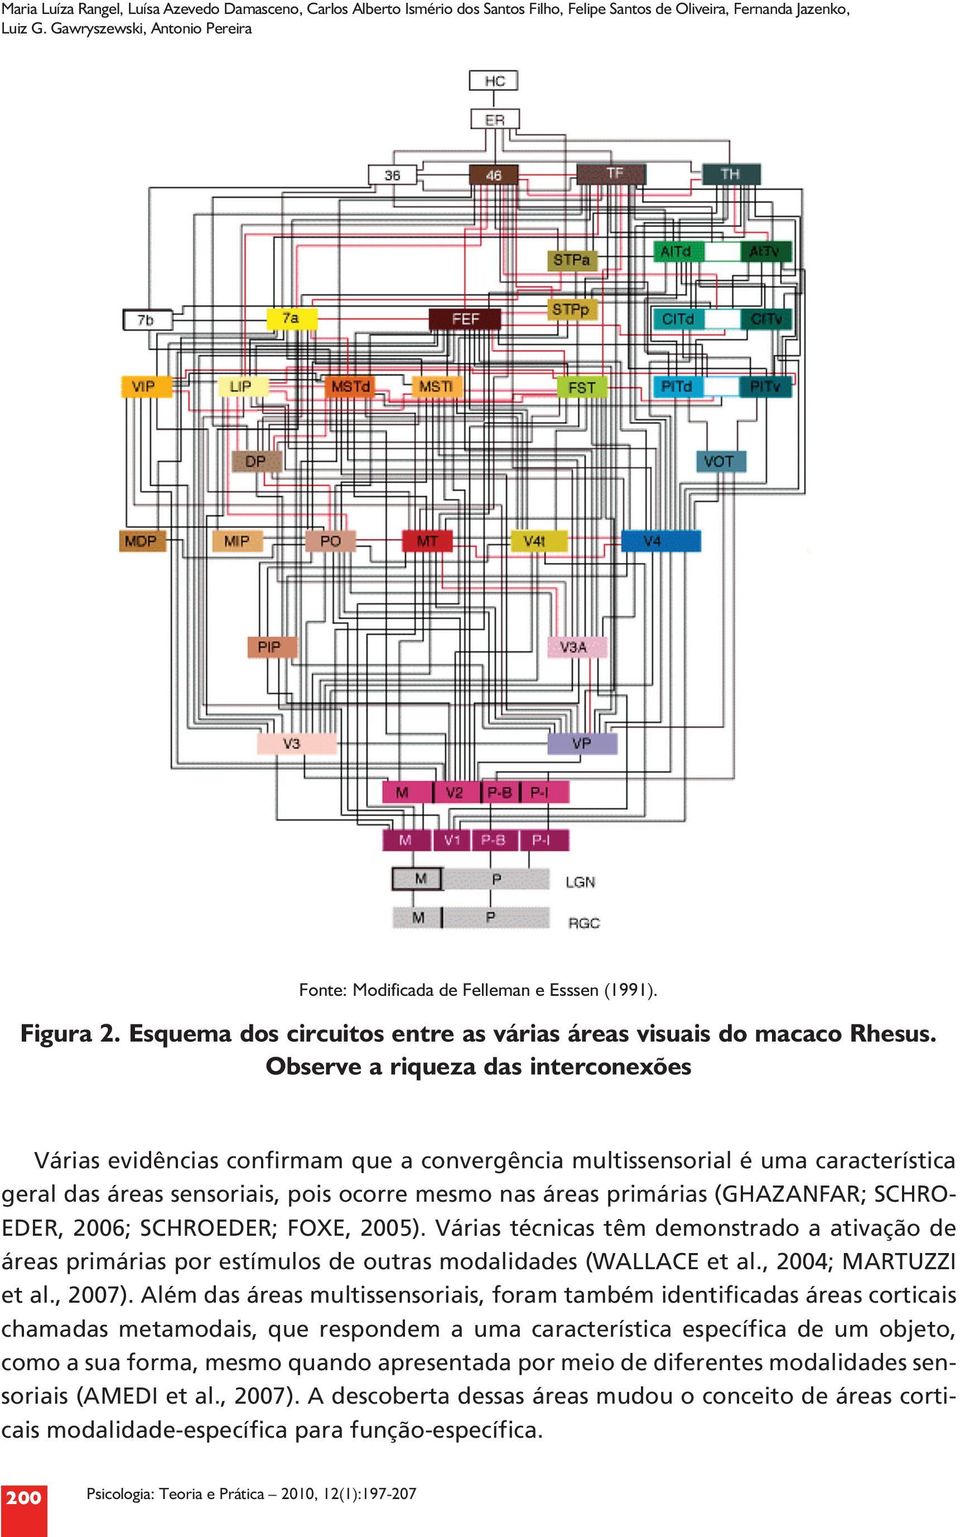 Observe a riqueza das interconexões Várias evidências confirmam que a convergência multissensorial é uma característica geral das áreas sensoriais, pois ocorre mesmo nas áreas primárias (GHAZANFAR;